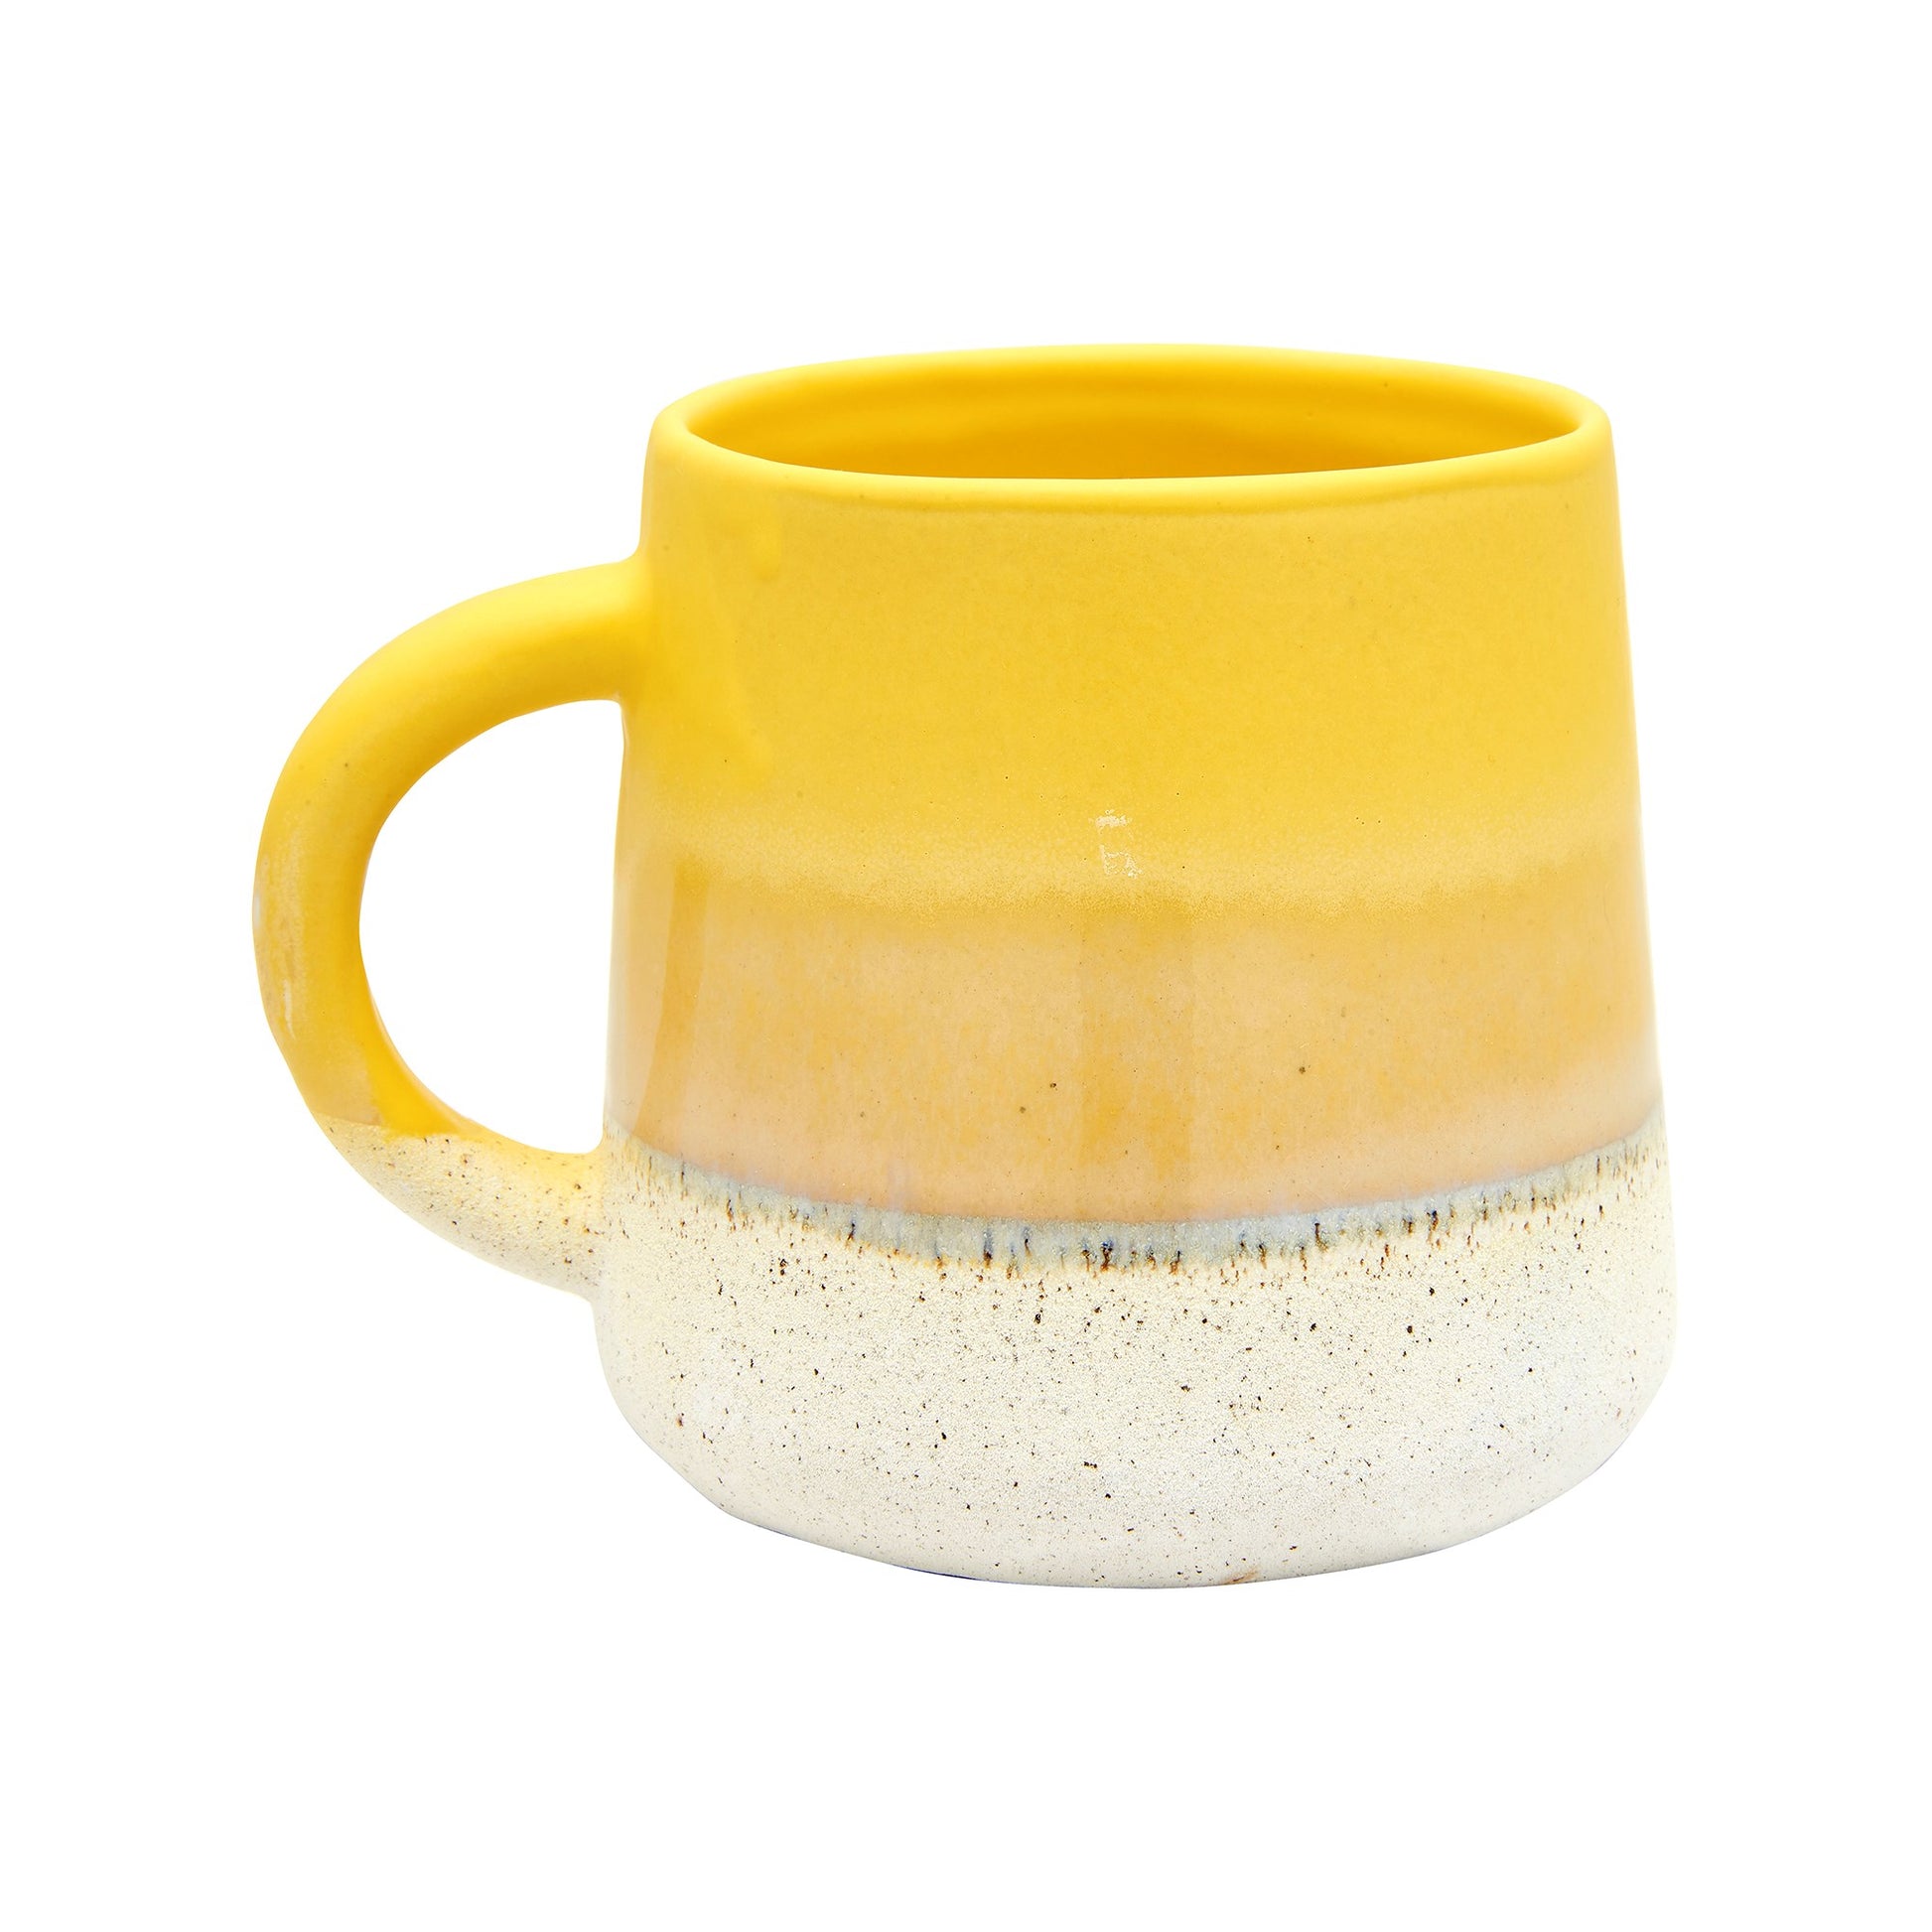 Mojave Glaze Yellow Mug from Home and Bay